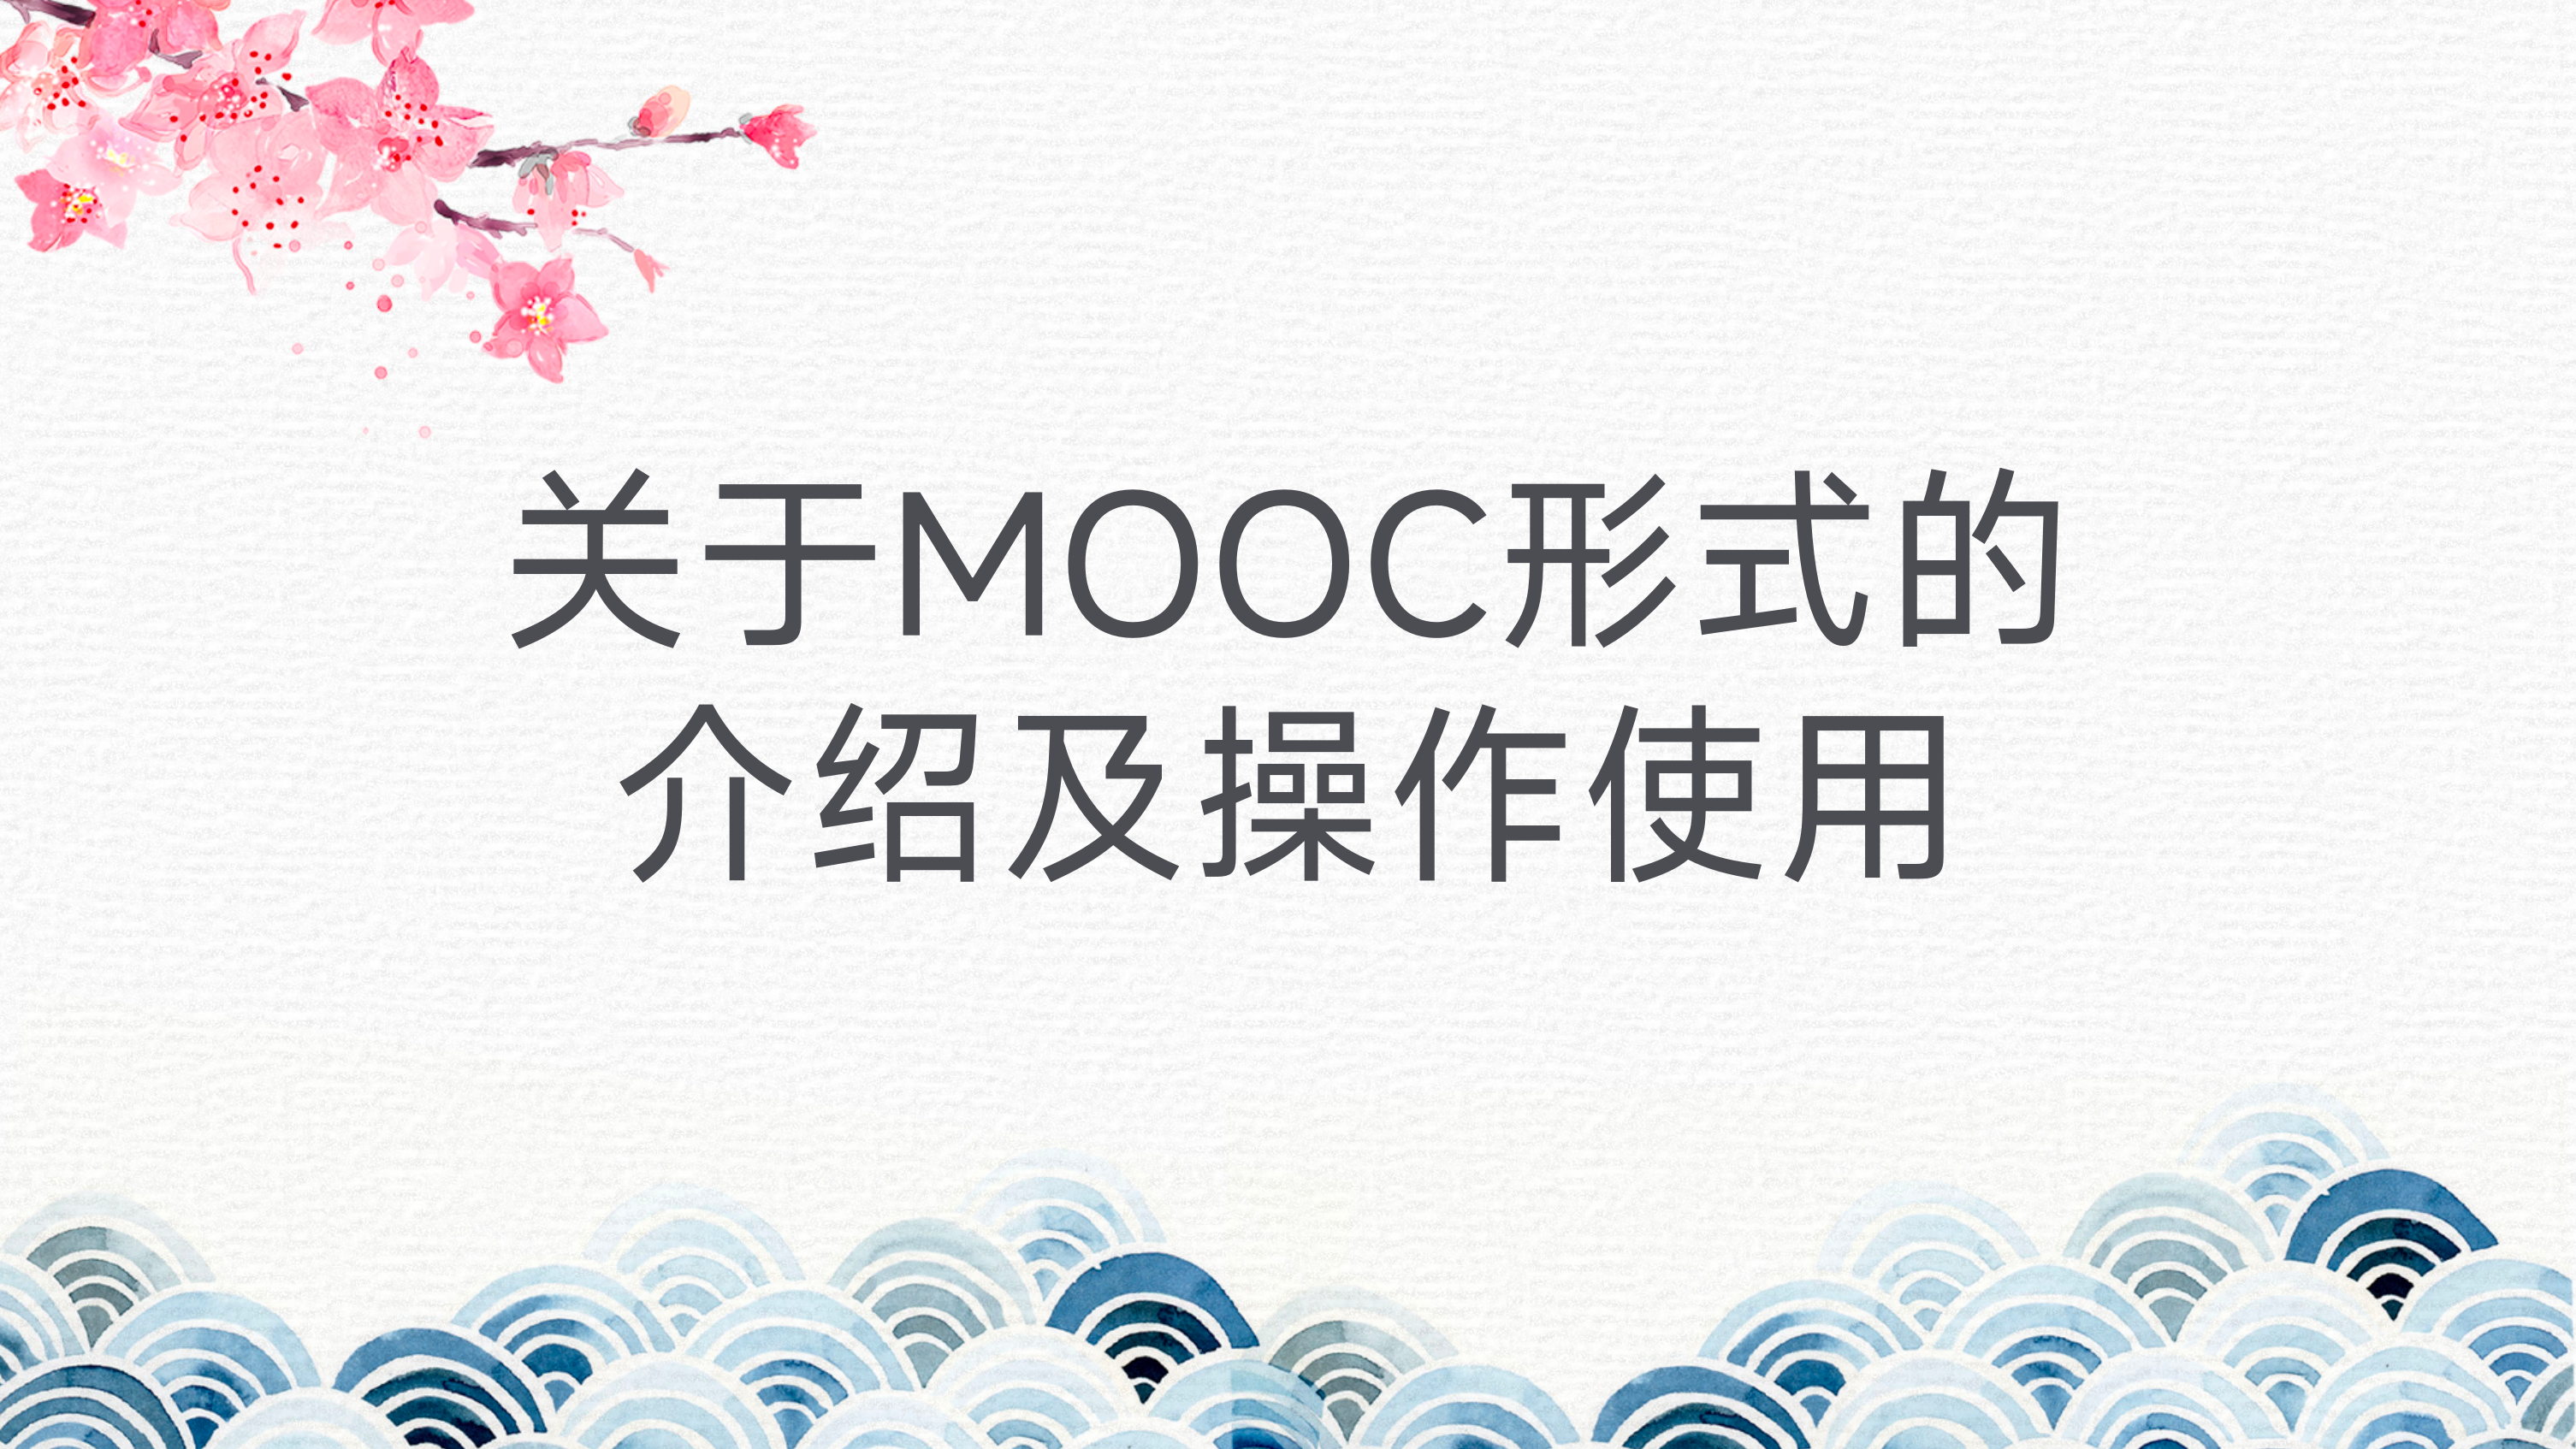 关于MOOC形式的介绍及操作使用 20230904100033